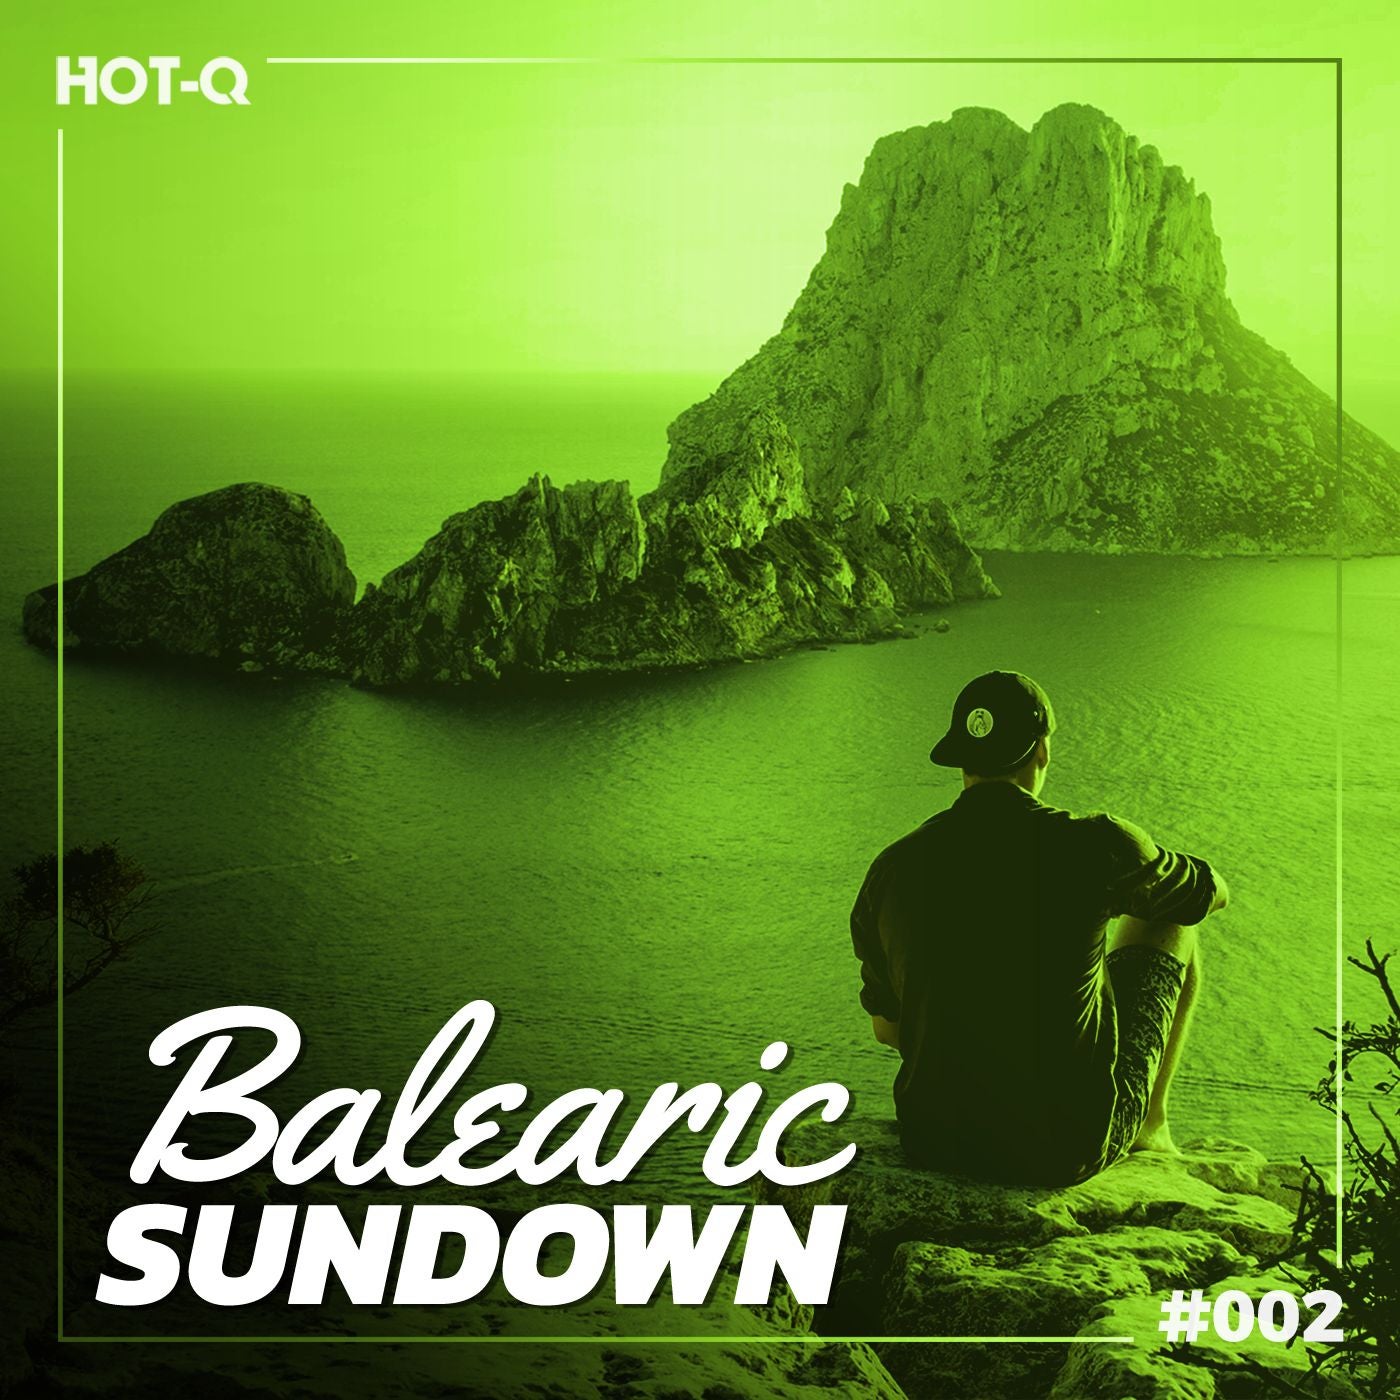 Balearic Sundown 002